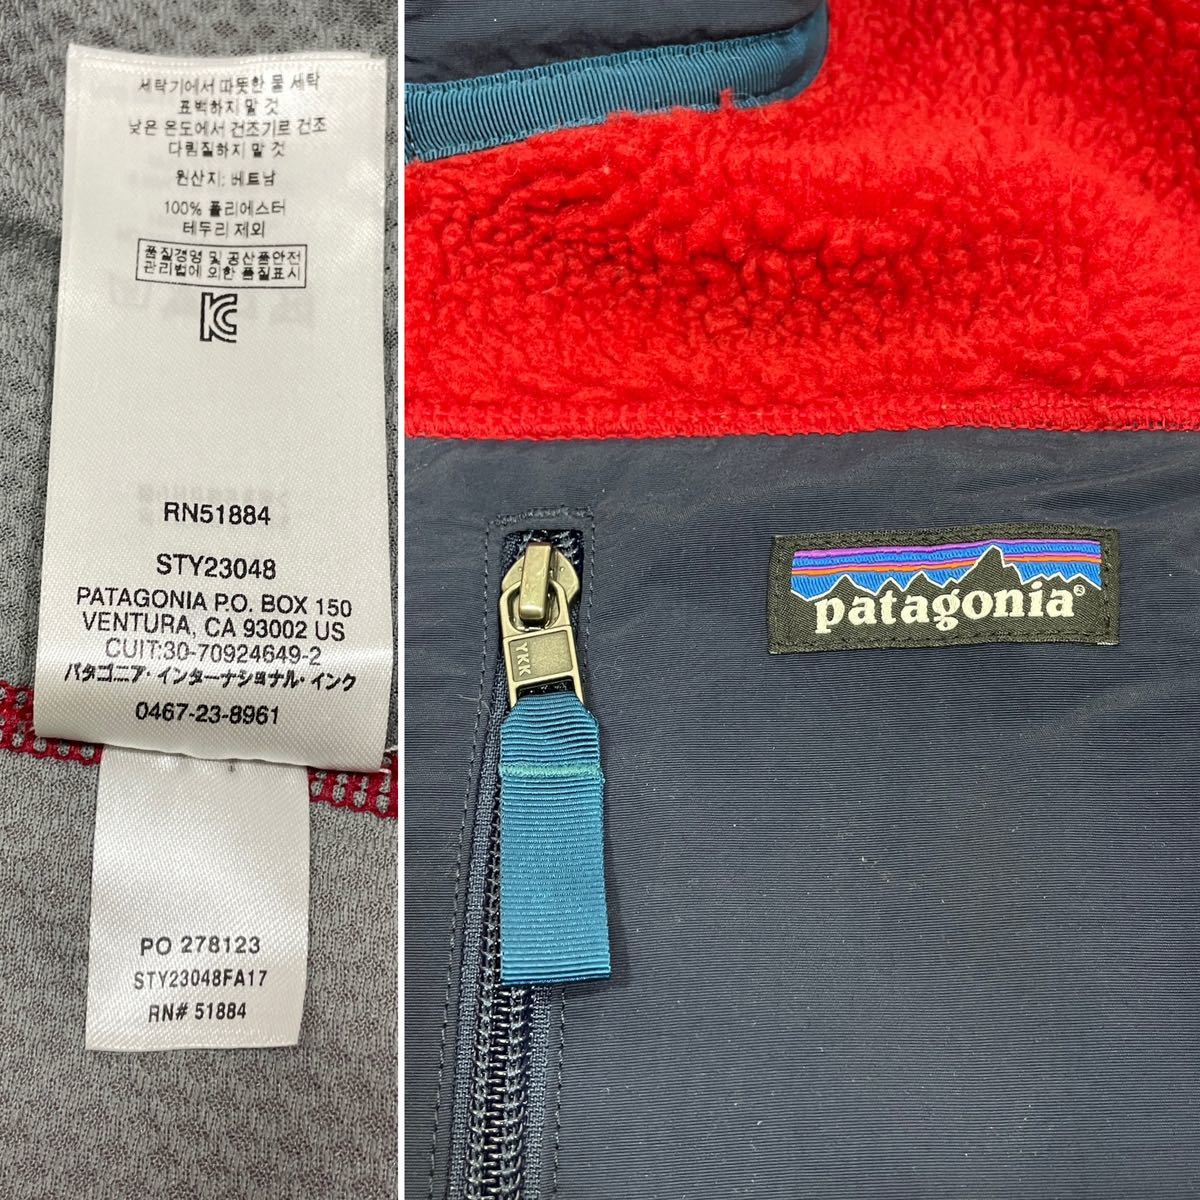 【良品】Patagonia レトロX フリースベスト メンズXS 普段Sサイズ位の方に/パタゴニアR1 R2 R3好きに/iPhone スマホ収納に便利な胸ポケット